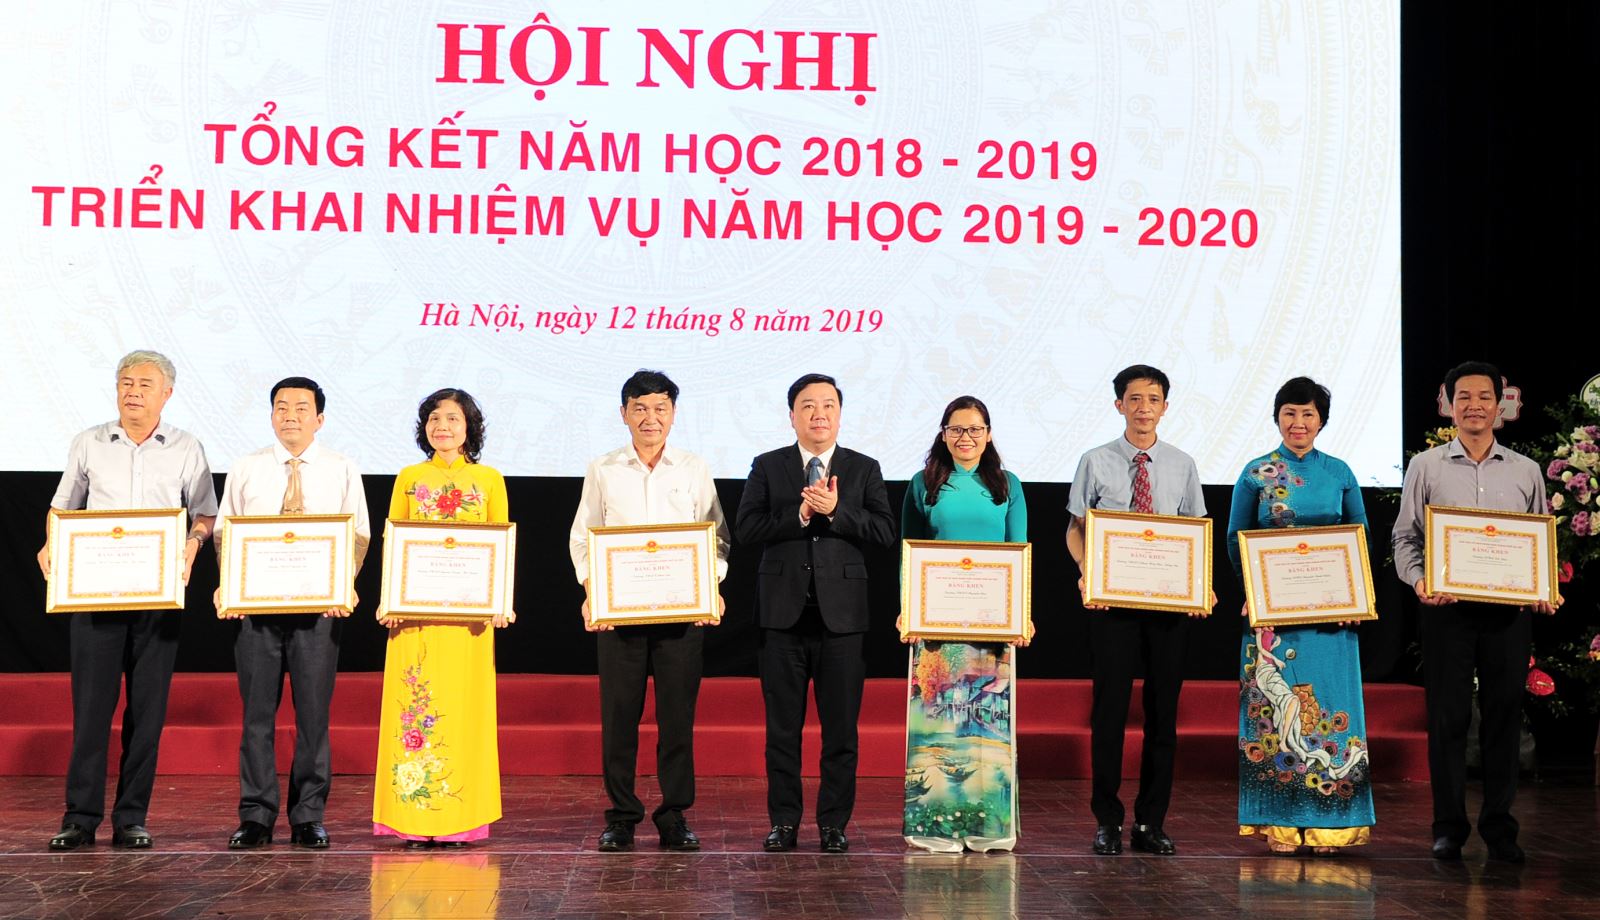 Trường Nguyễn Siêu nhận bằng khen của UBND TP Hà Nội